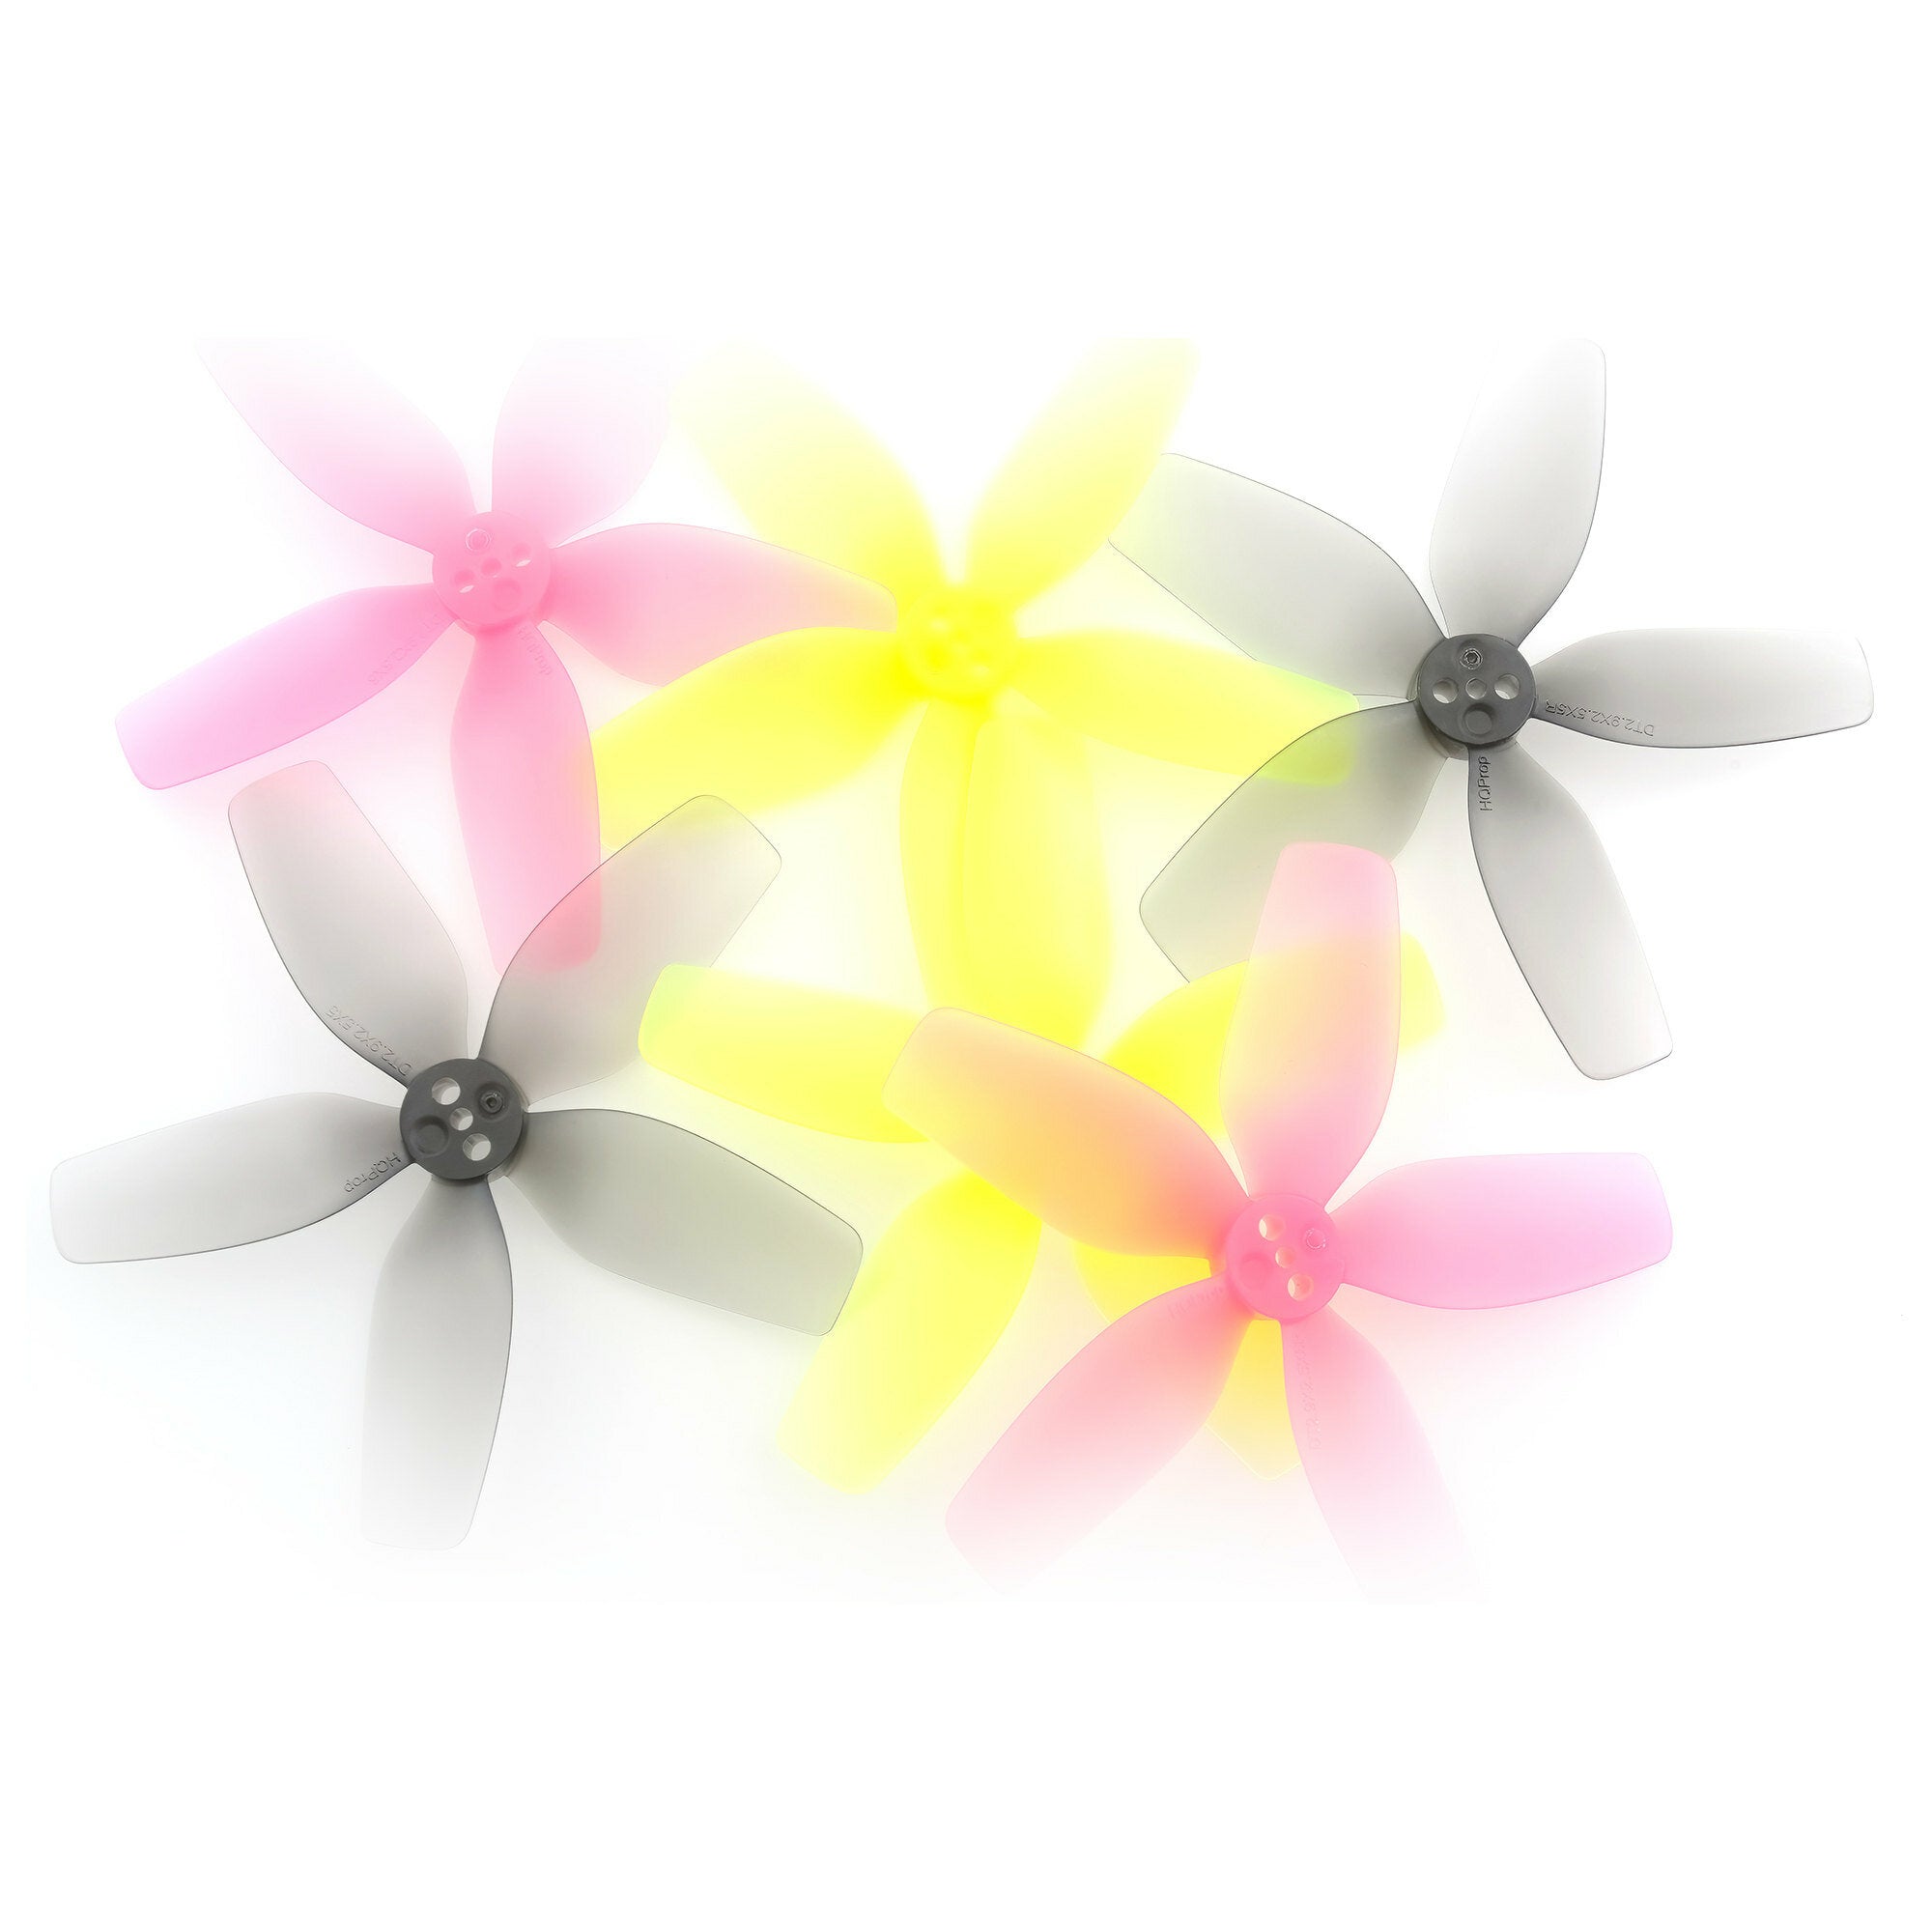 2 paar hqprop dt2.9x2.5x5 2925 2.9 inch 5-blads propeller voor dji avata rc drone fpv racing